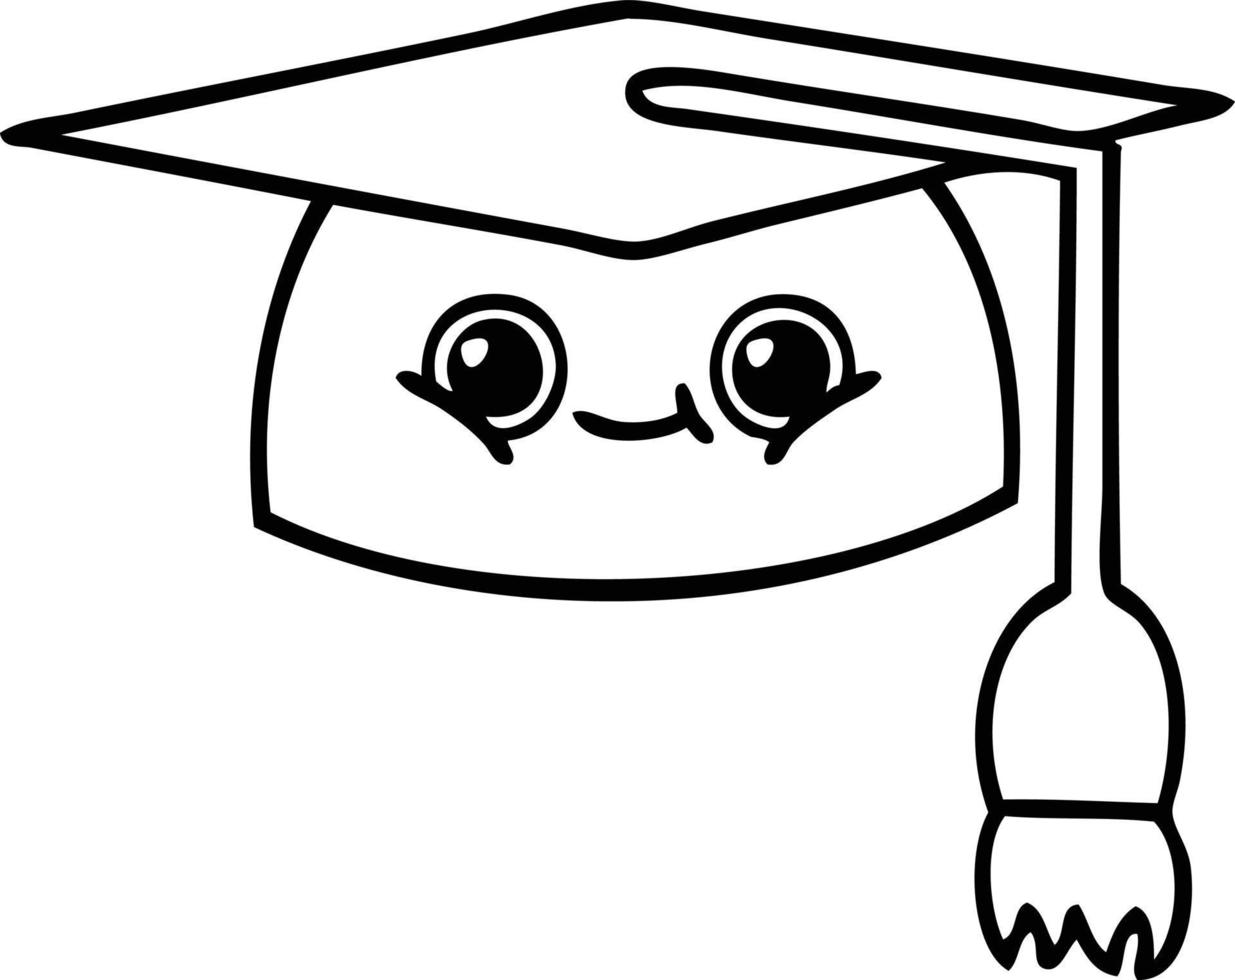 chapeau de graduation dessin animé dessin au trait vecteur